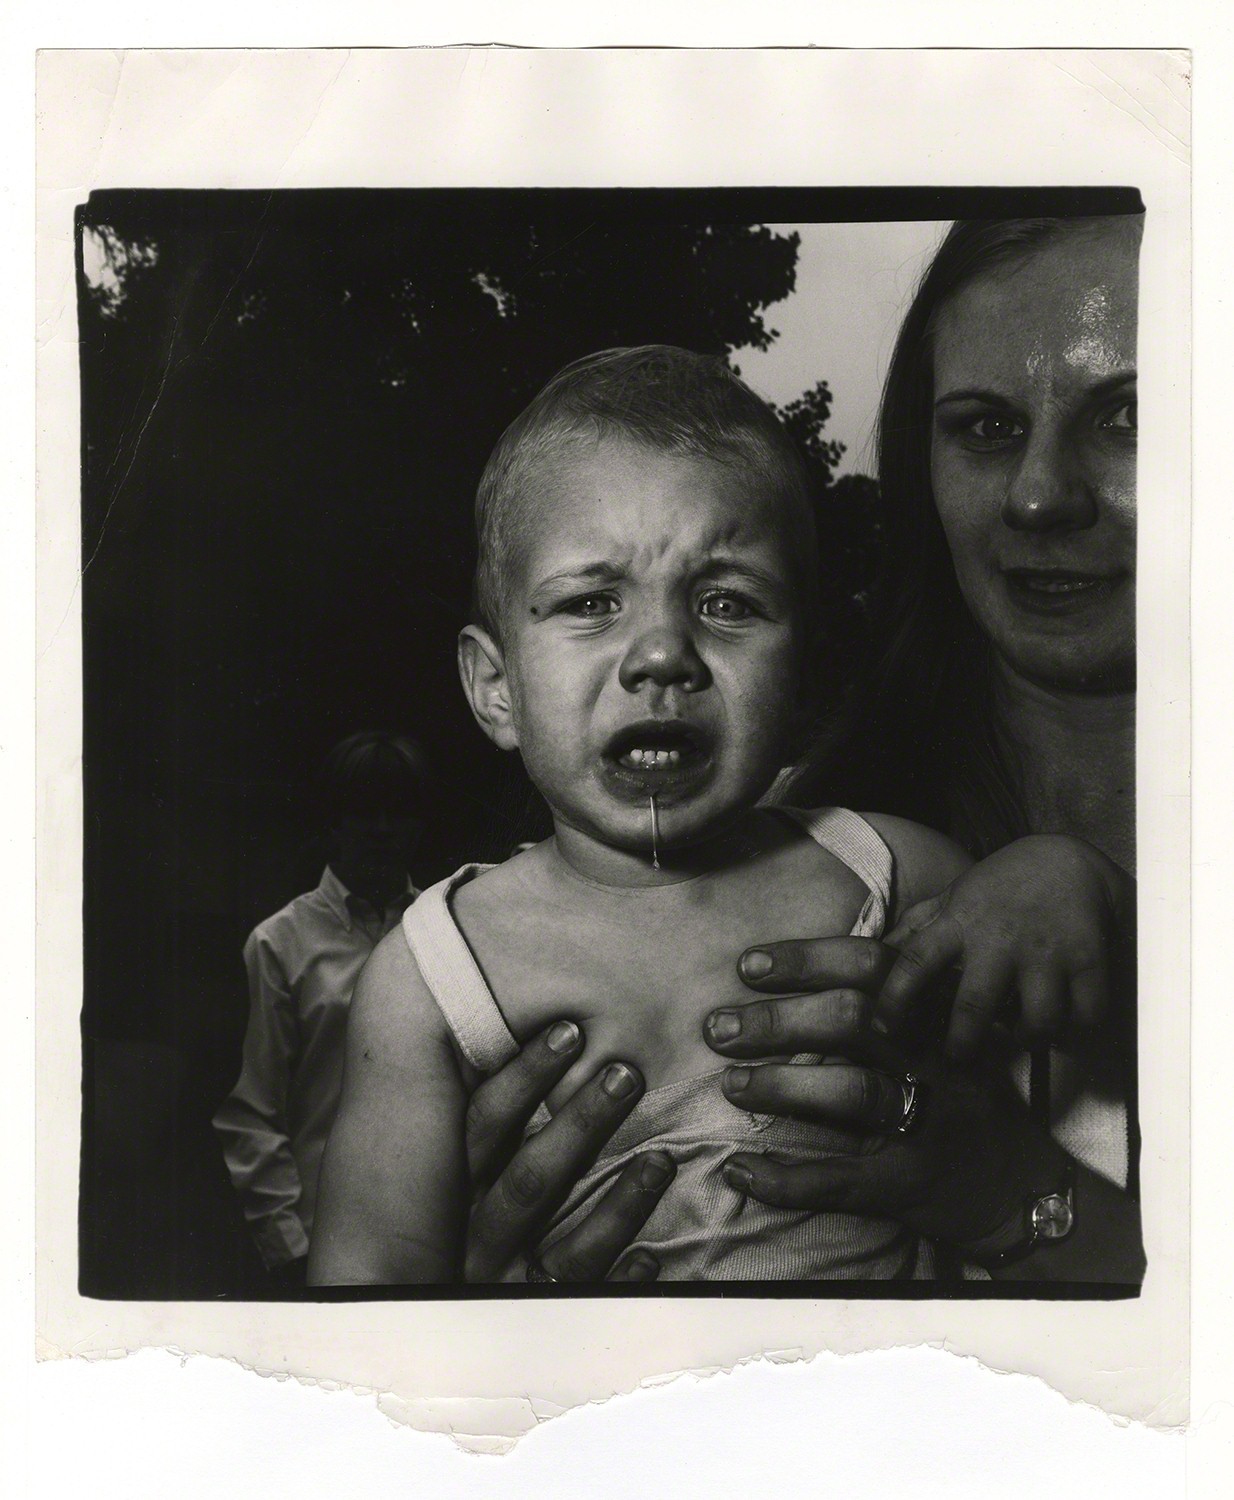 Мама держит плачущего ребенка, Нью-Джерси, 1967. Фотограф Диана Арбус